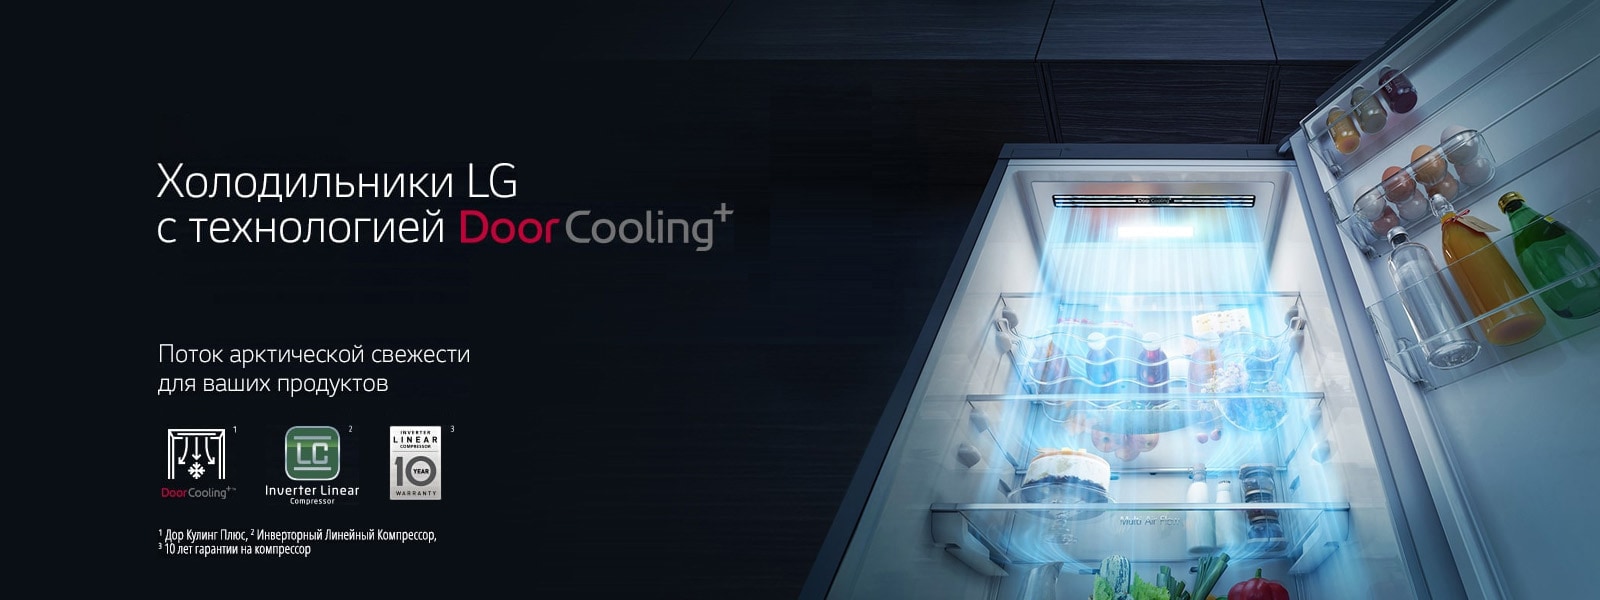 Холодильники LG с технологией Door Cooling+